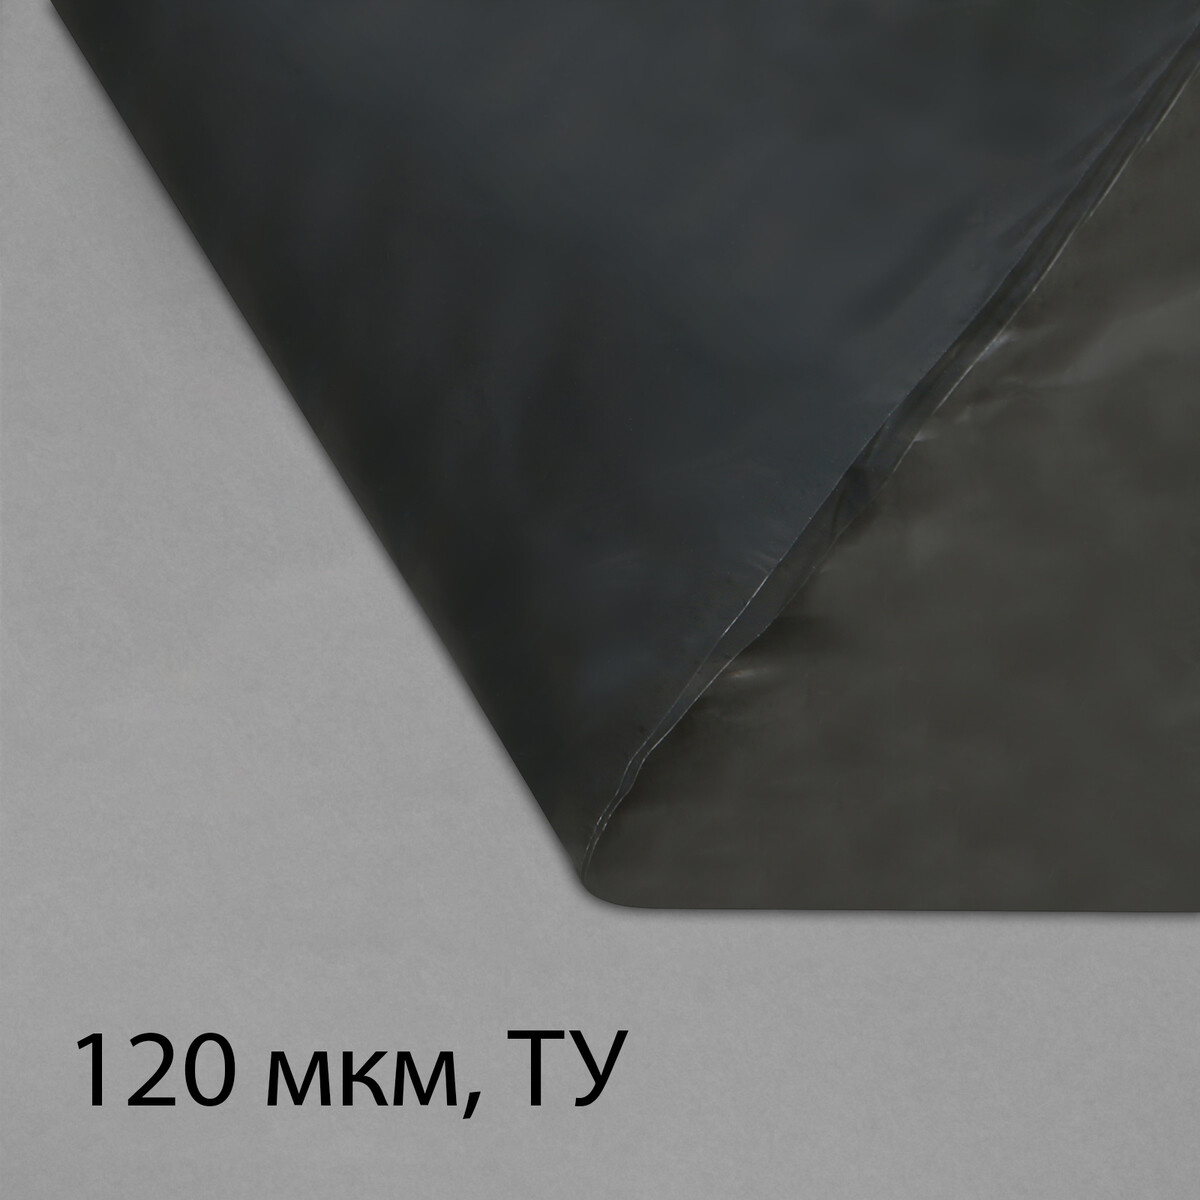 Пленка полиэтиленовая, техническая, толщина 120 мкм, 5 × 3 м, рукав (1,5 м × 2), черная, 2 сорт, эконом 50 % пленка полиэтиленовая толщина 200 мкм прозрачная 5 × 3 м рукав 1 5 × 2 м эконом 50%